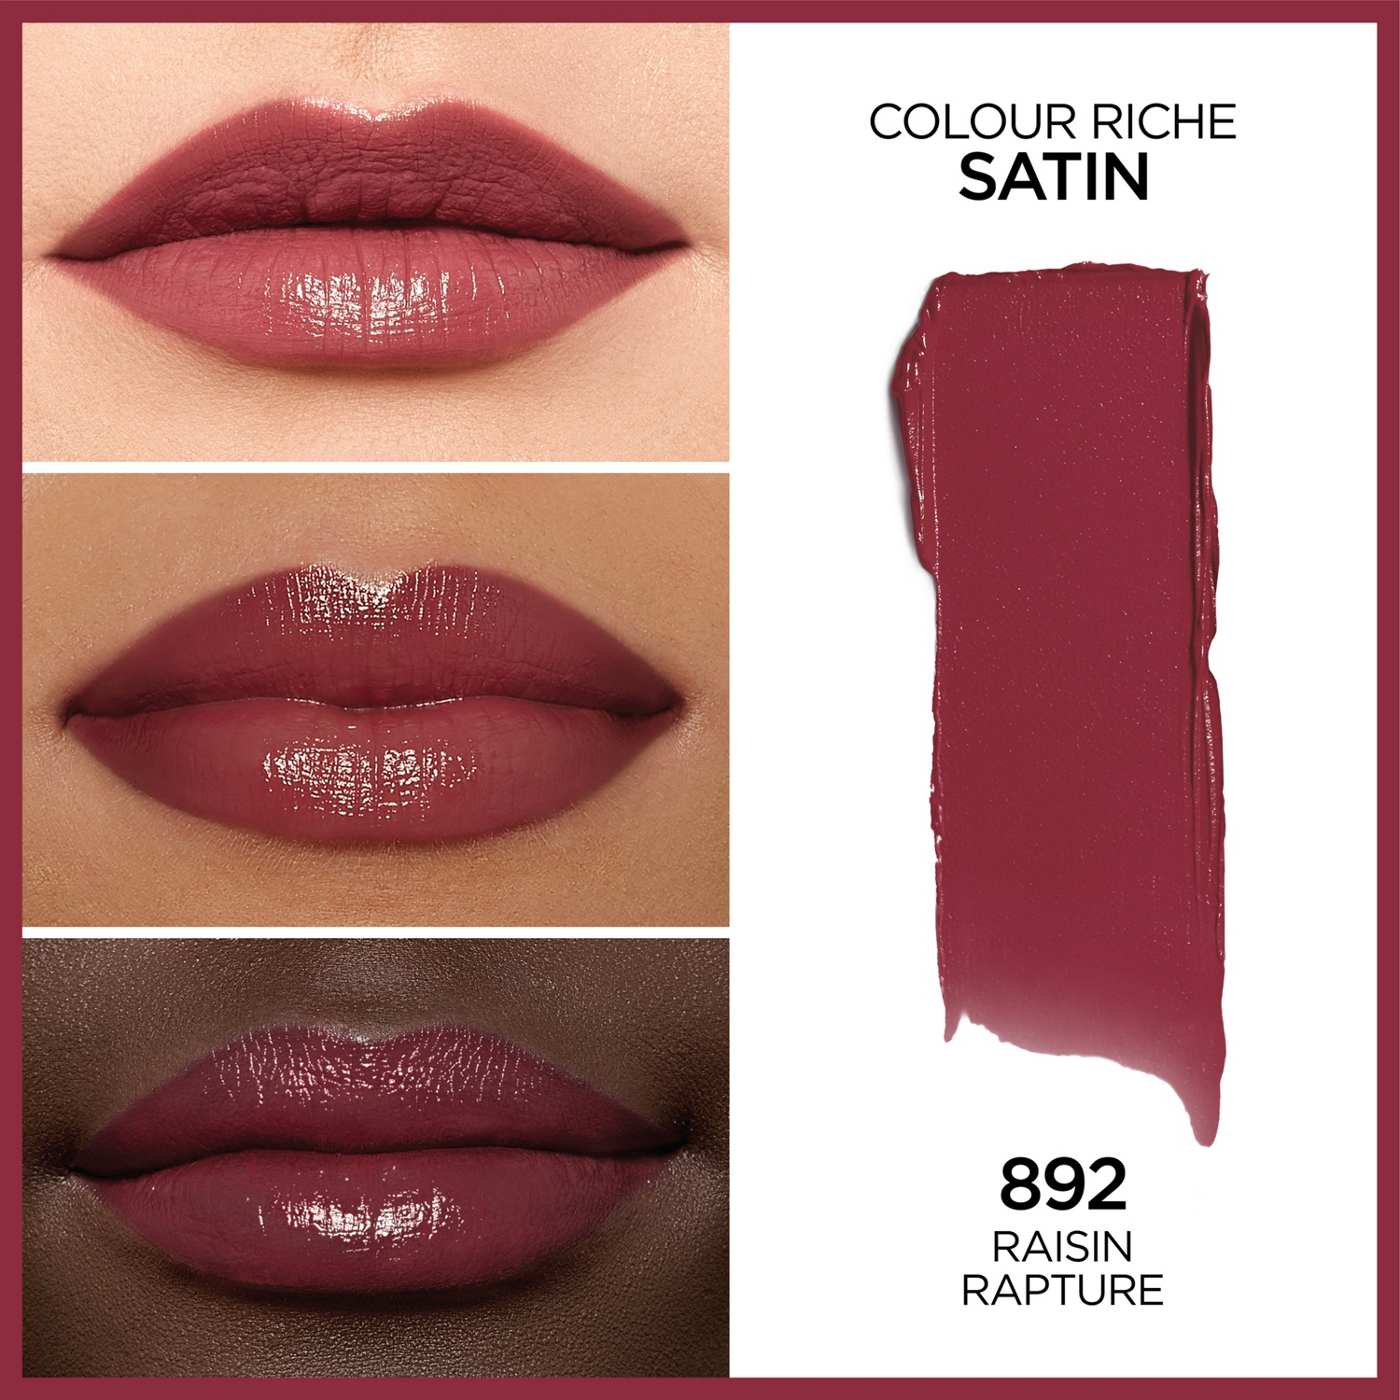 L'Oréal Paris Colour Riche Original Satin Lipstick - Raisin Rapture; image 4 of 5